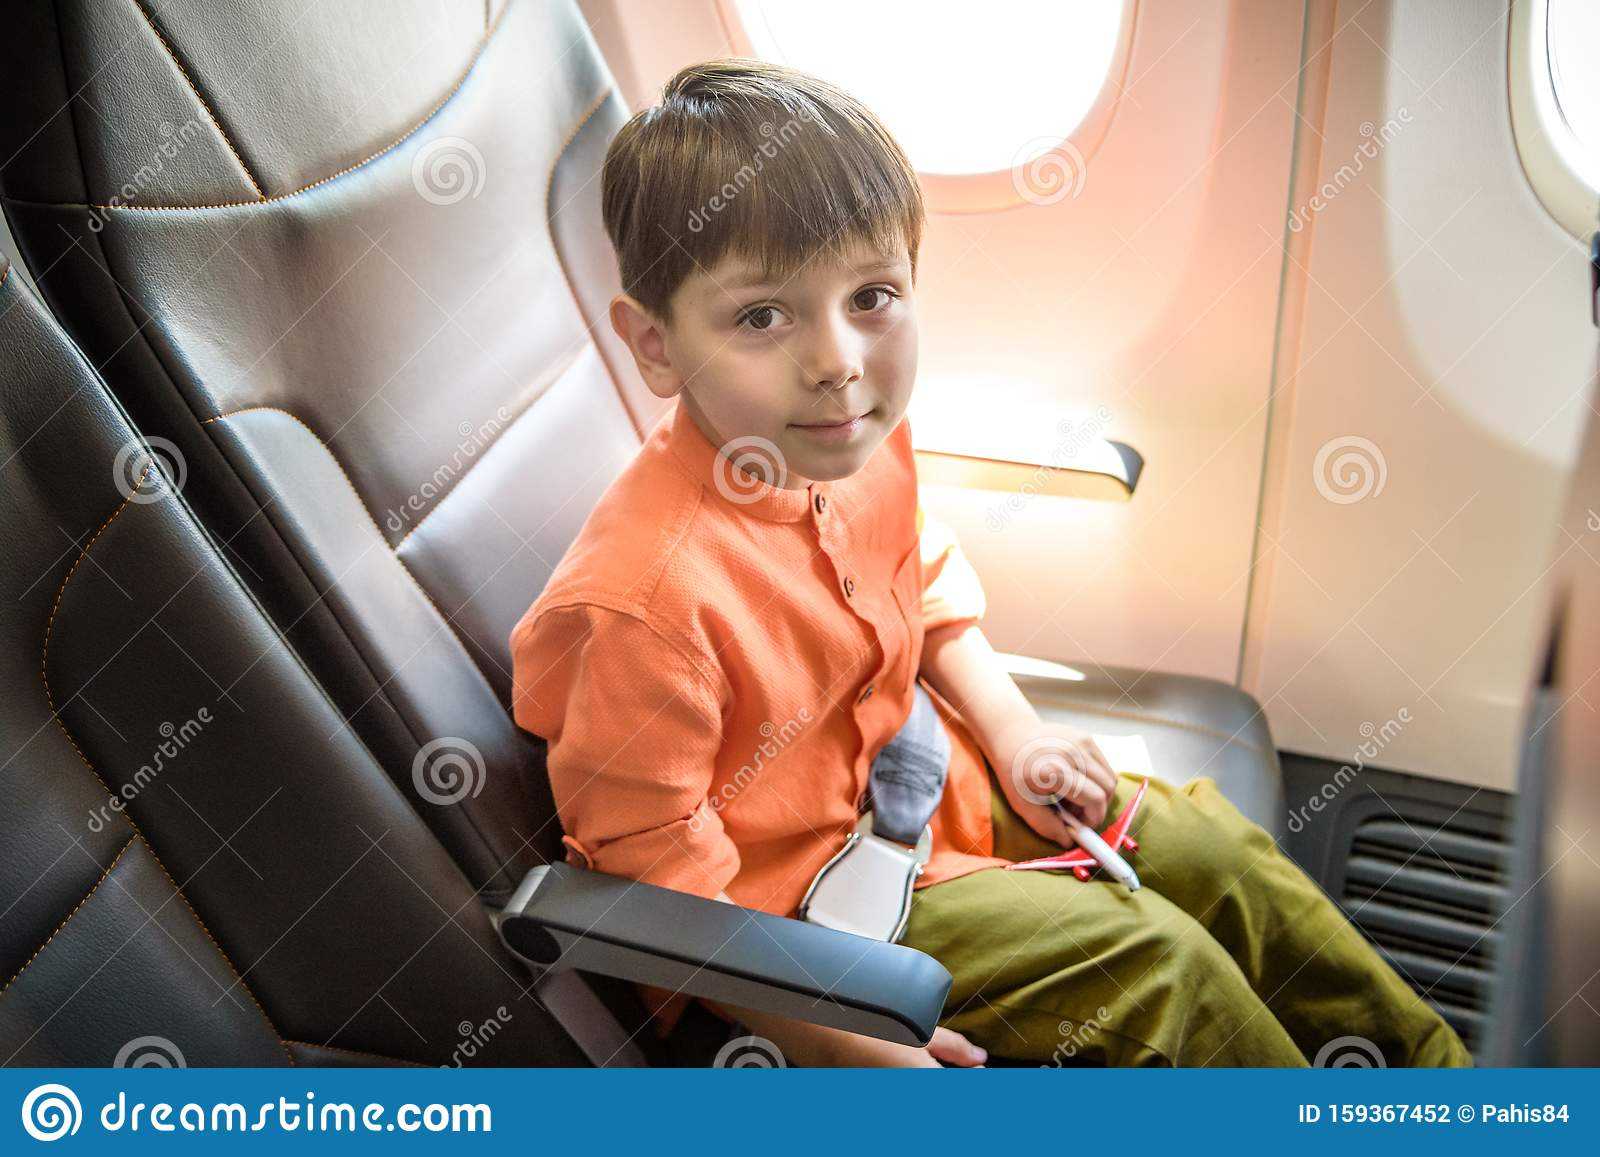 Можно ли детям летать на самолете и с какого возраста